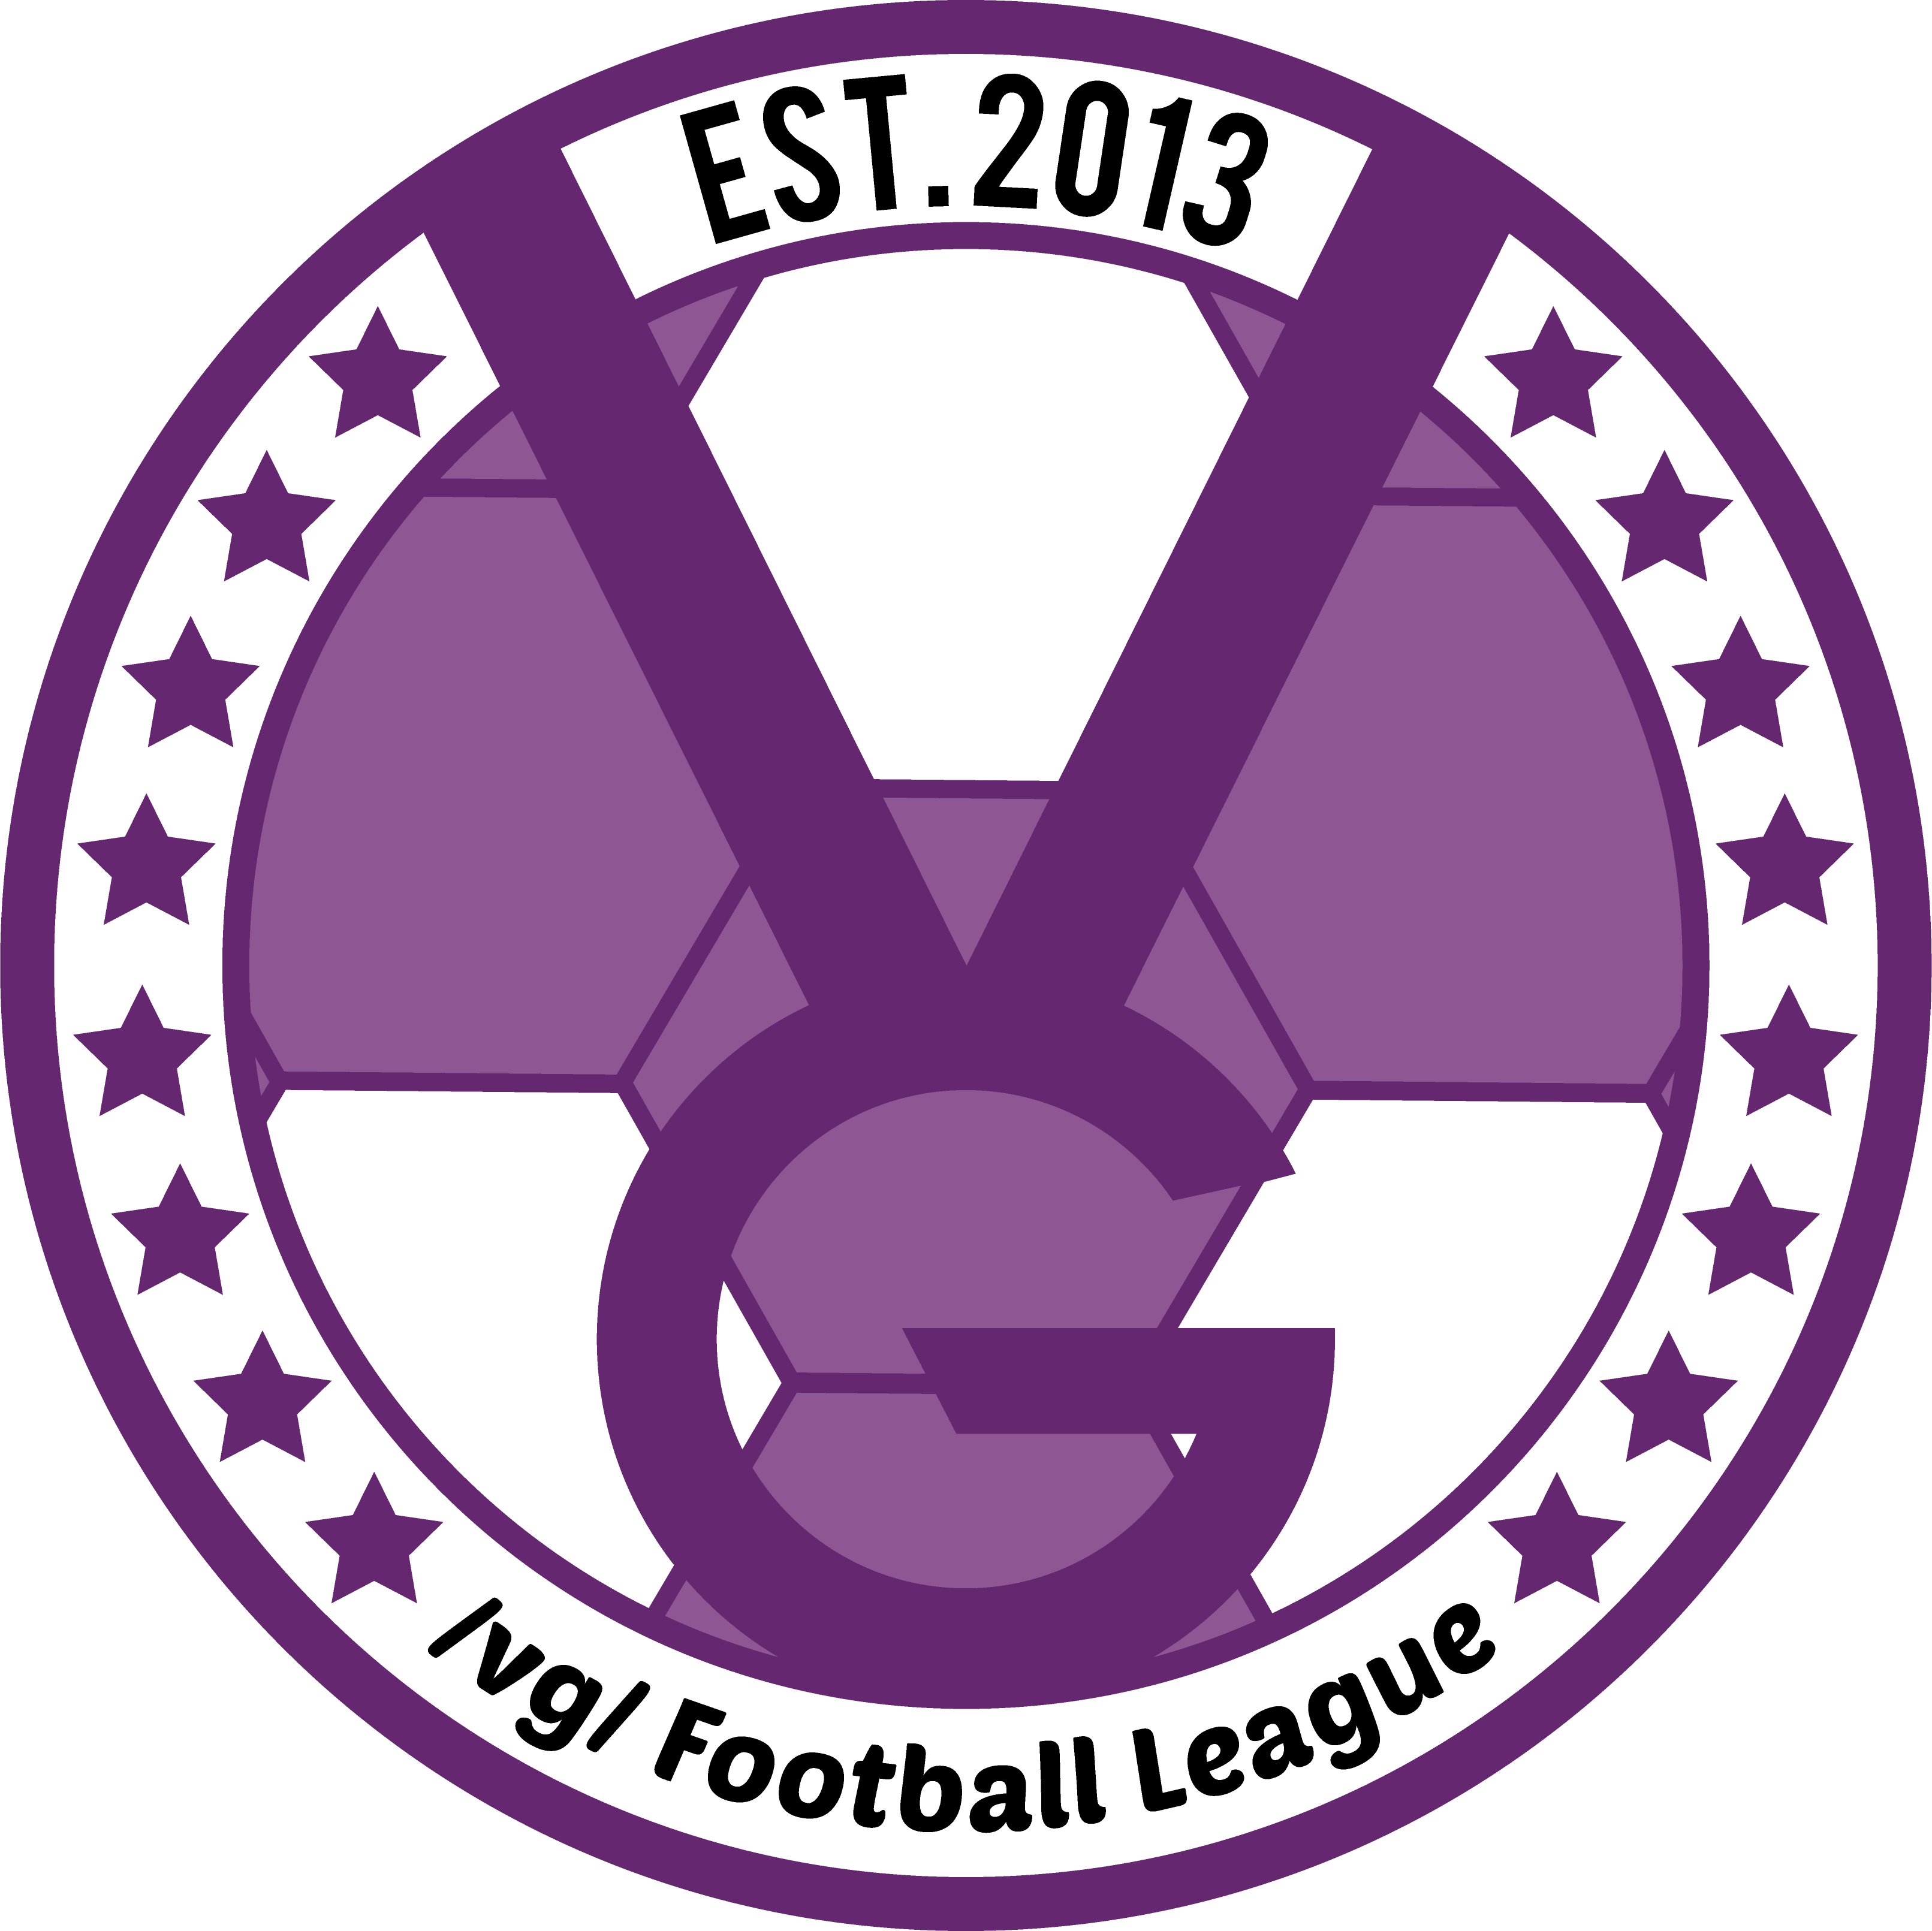 /vg/ League 5